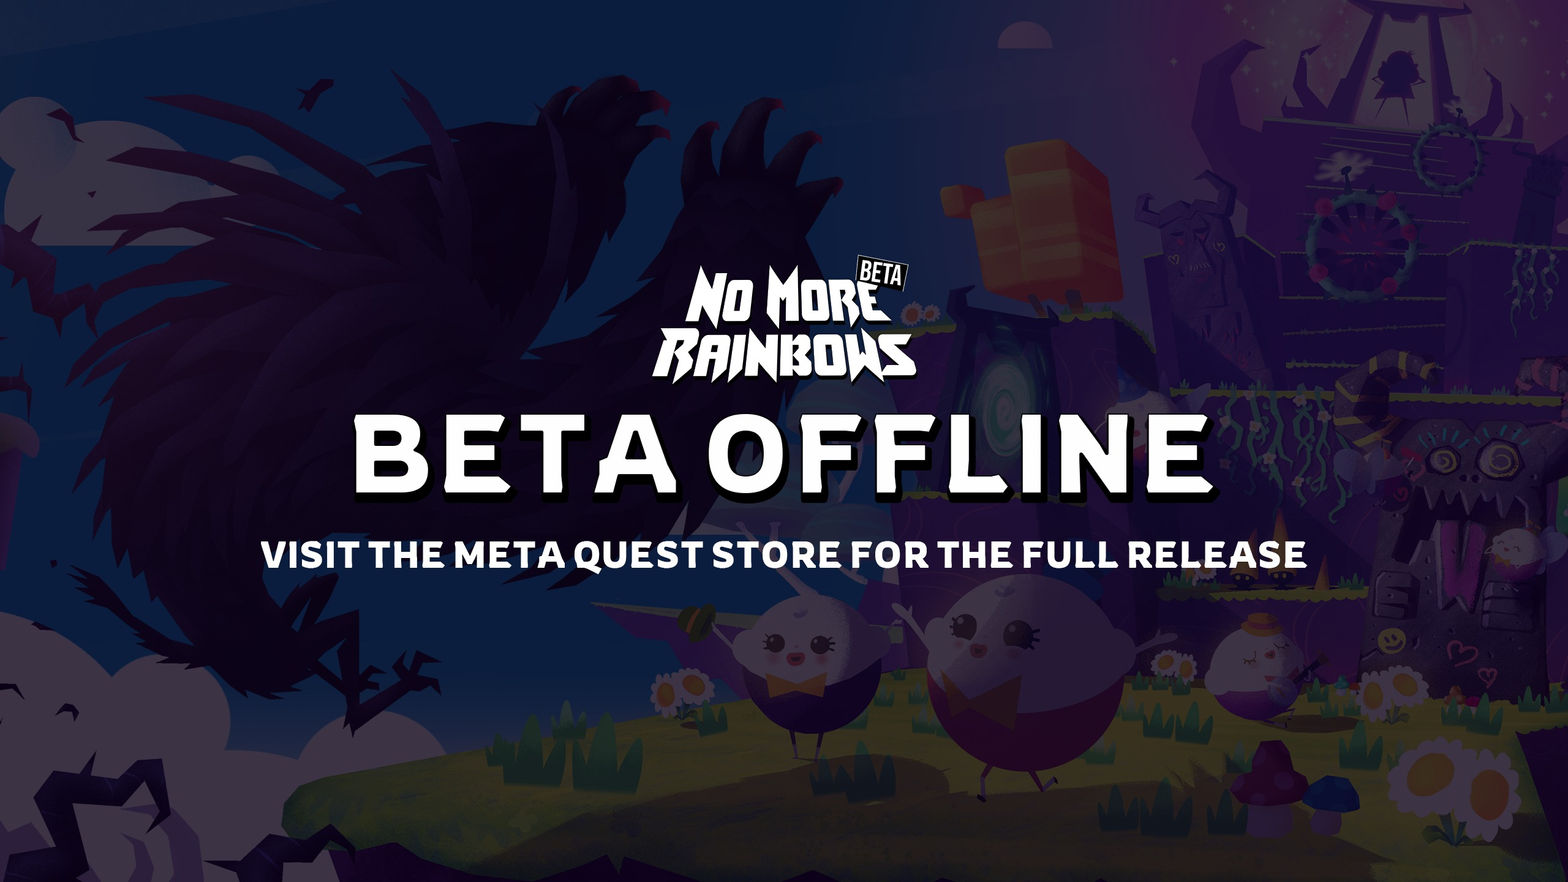 NMR Beta (OFFLINE) - Full game on Meta Quest Store (Link in description)